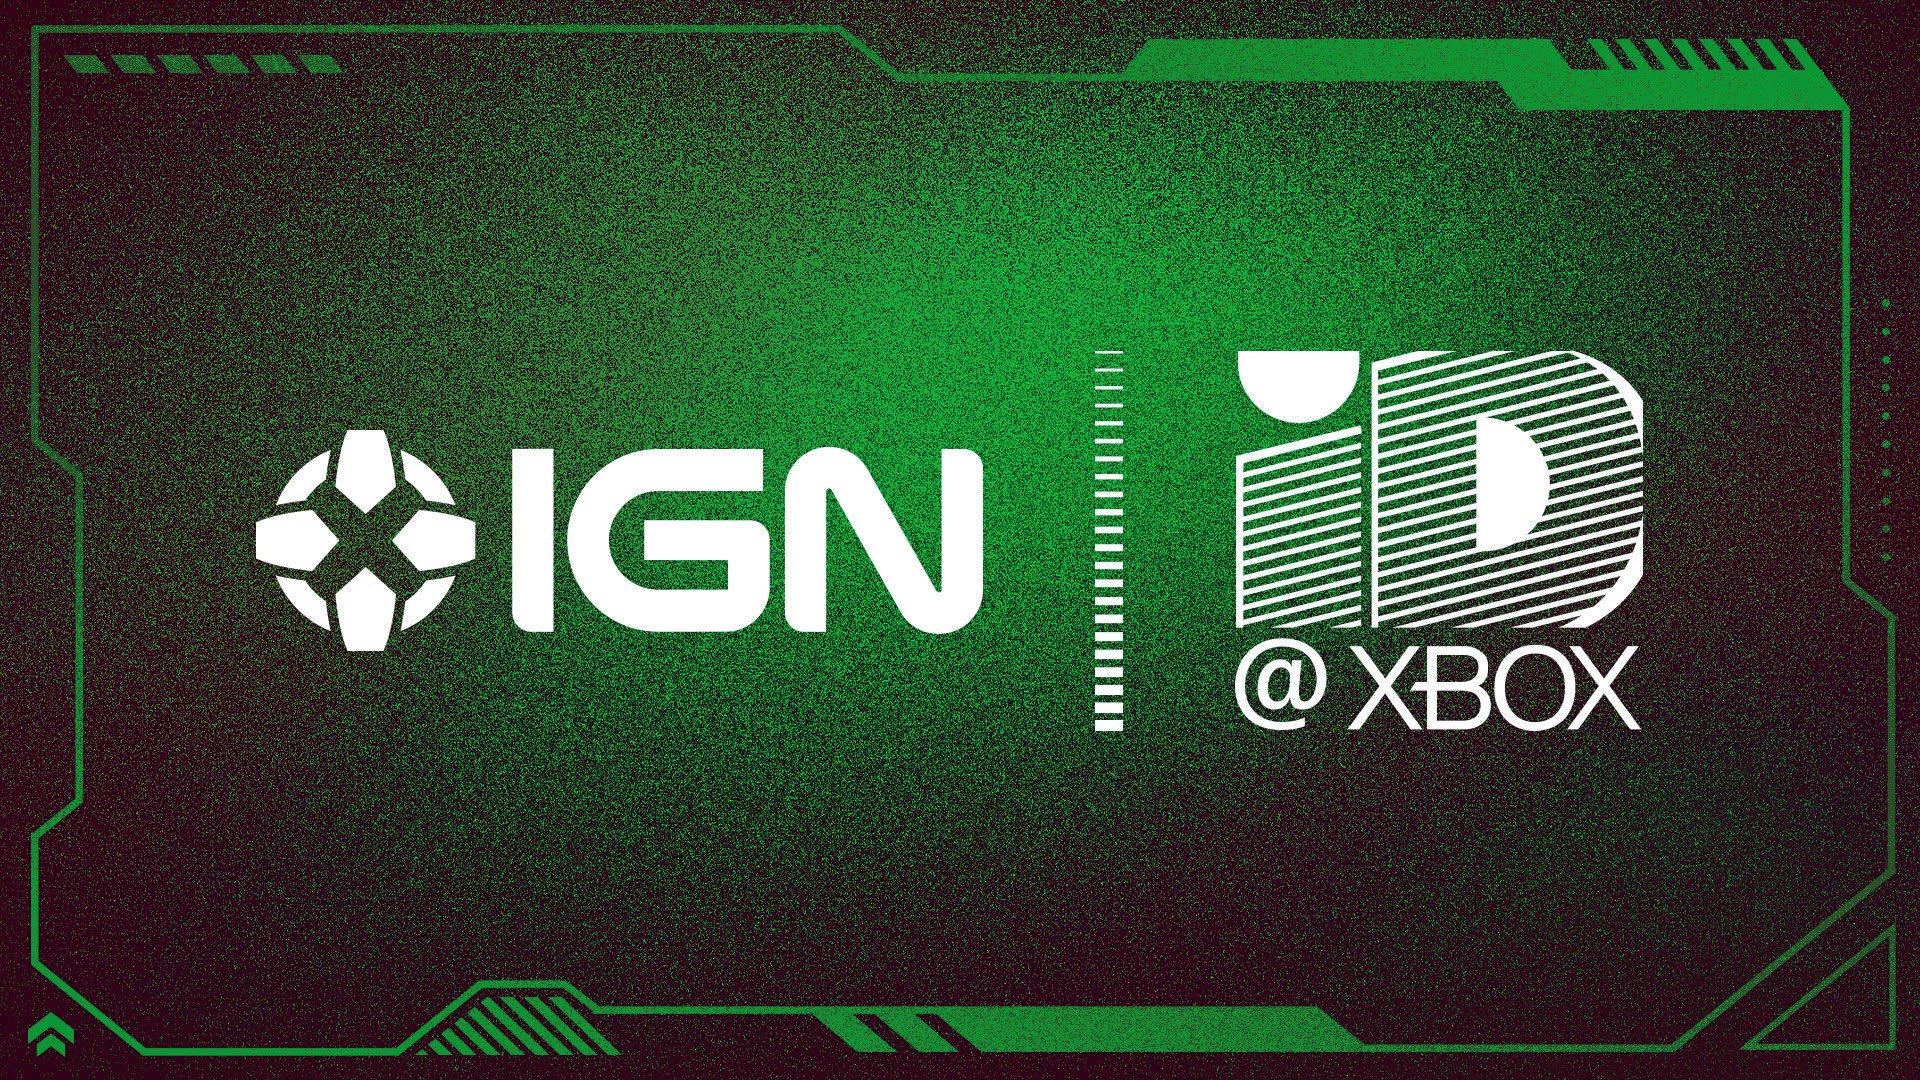 New ID@Xbox Digital Showcase To Premiere Next Week